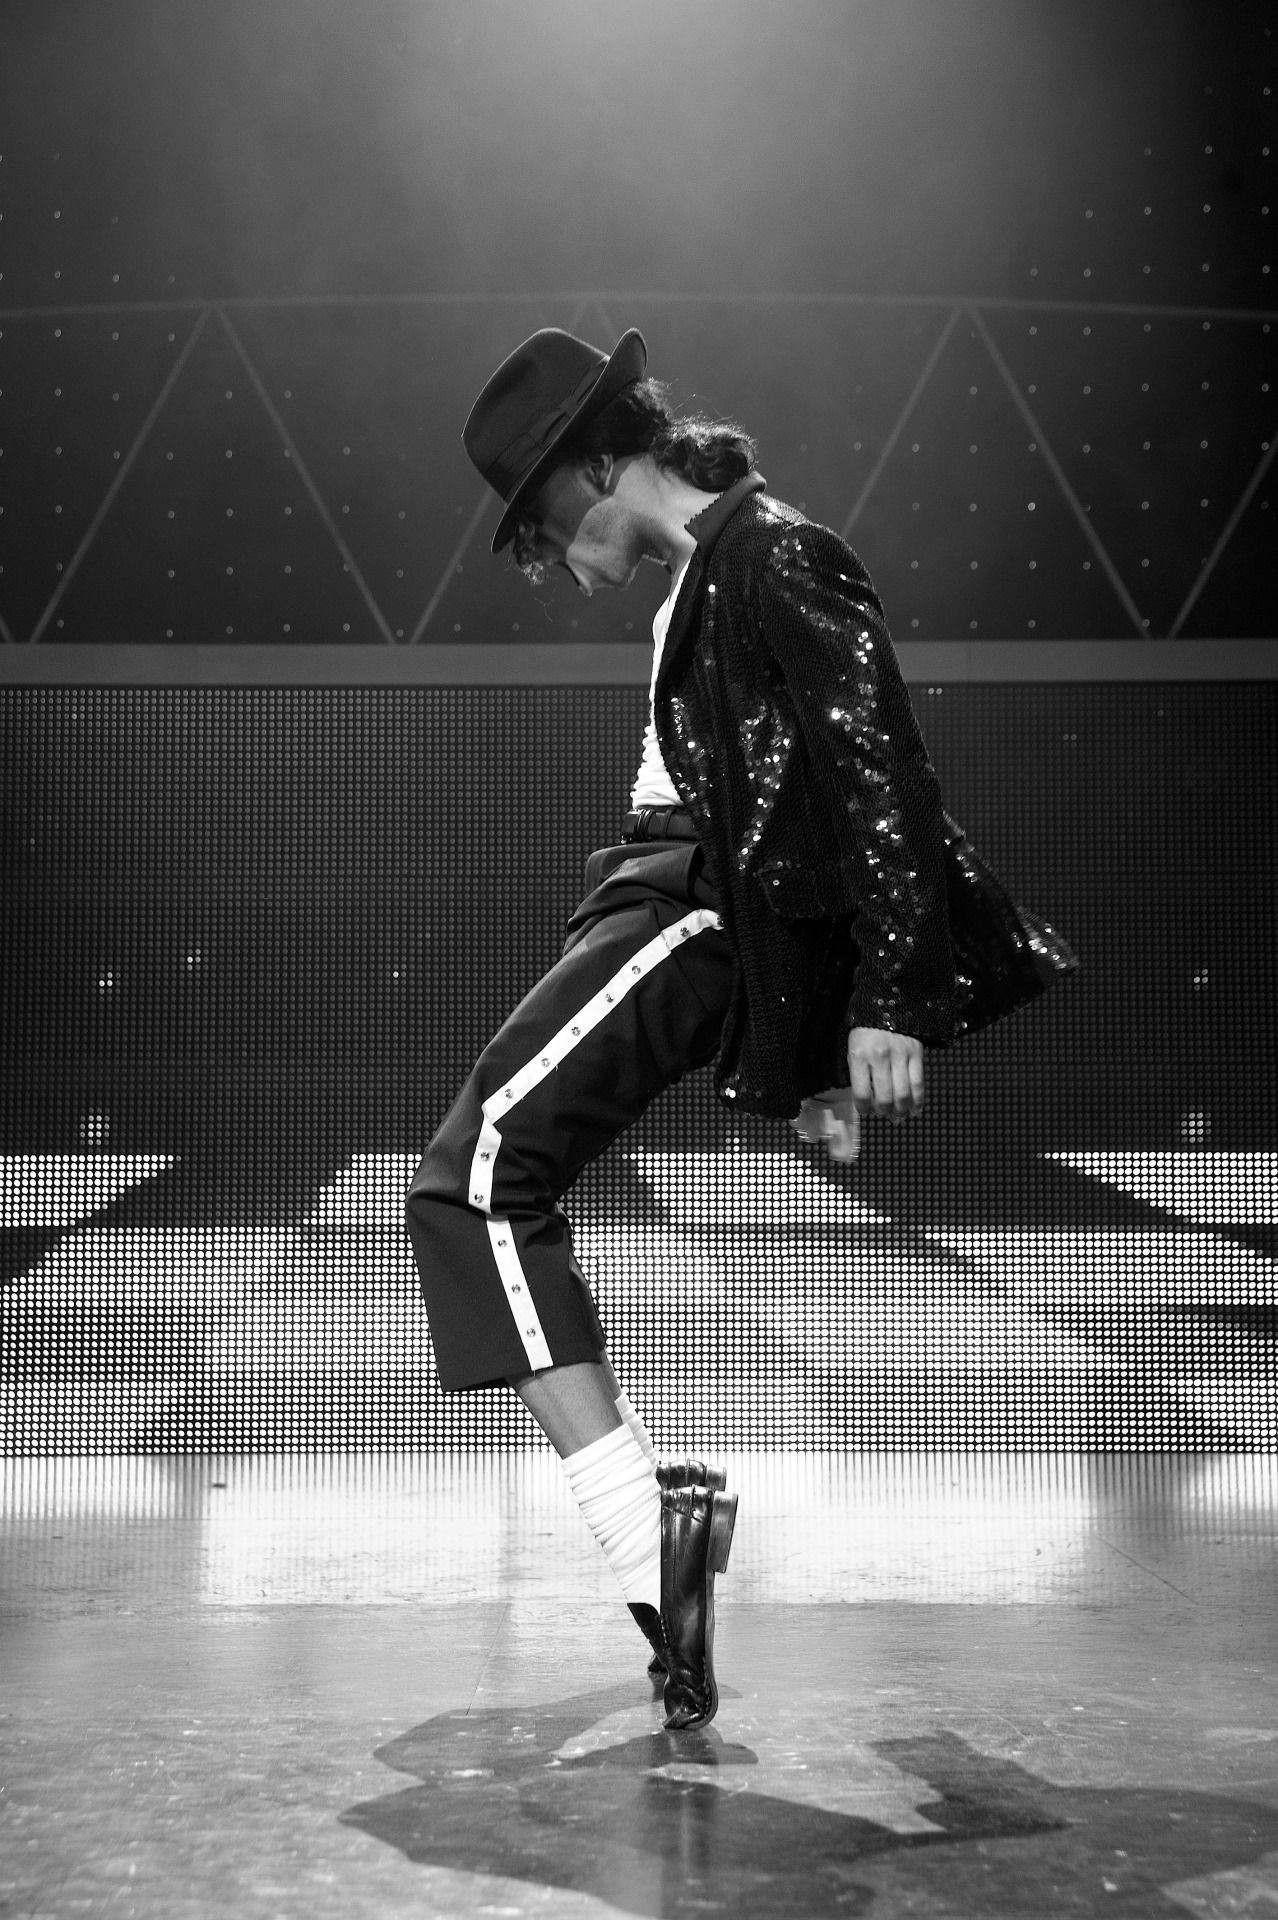 マイケルジャクソンライブ壁紙,ダンス,黒と白,ヒップホップダンス,ストリートダンス,パフォーマンス